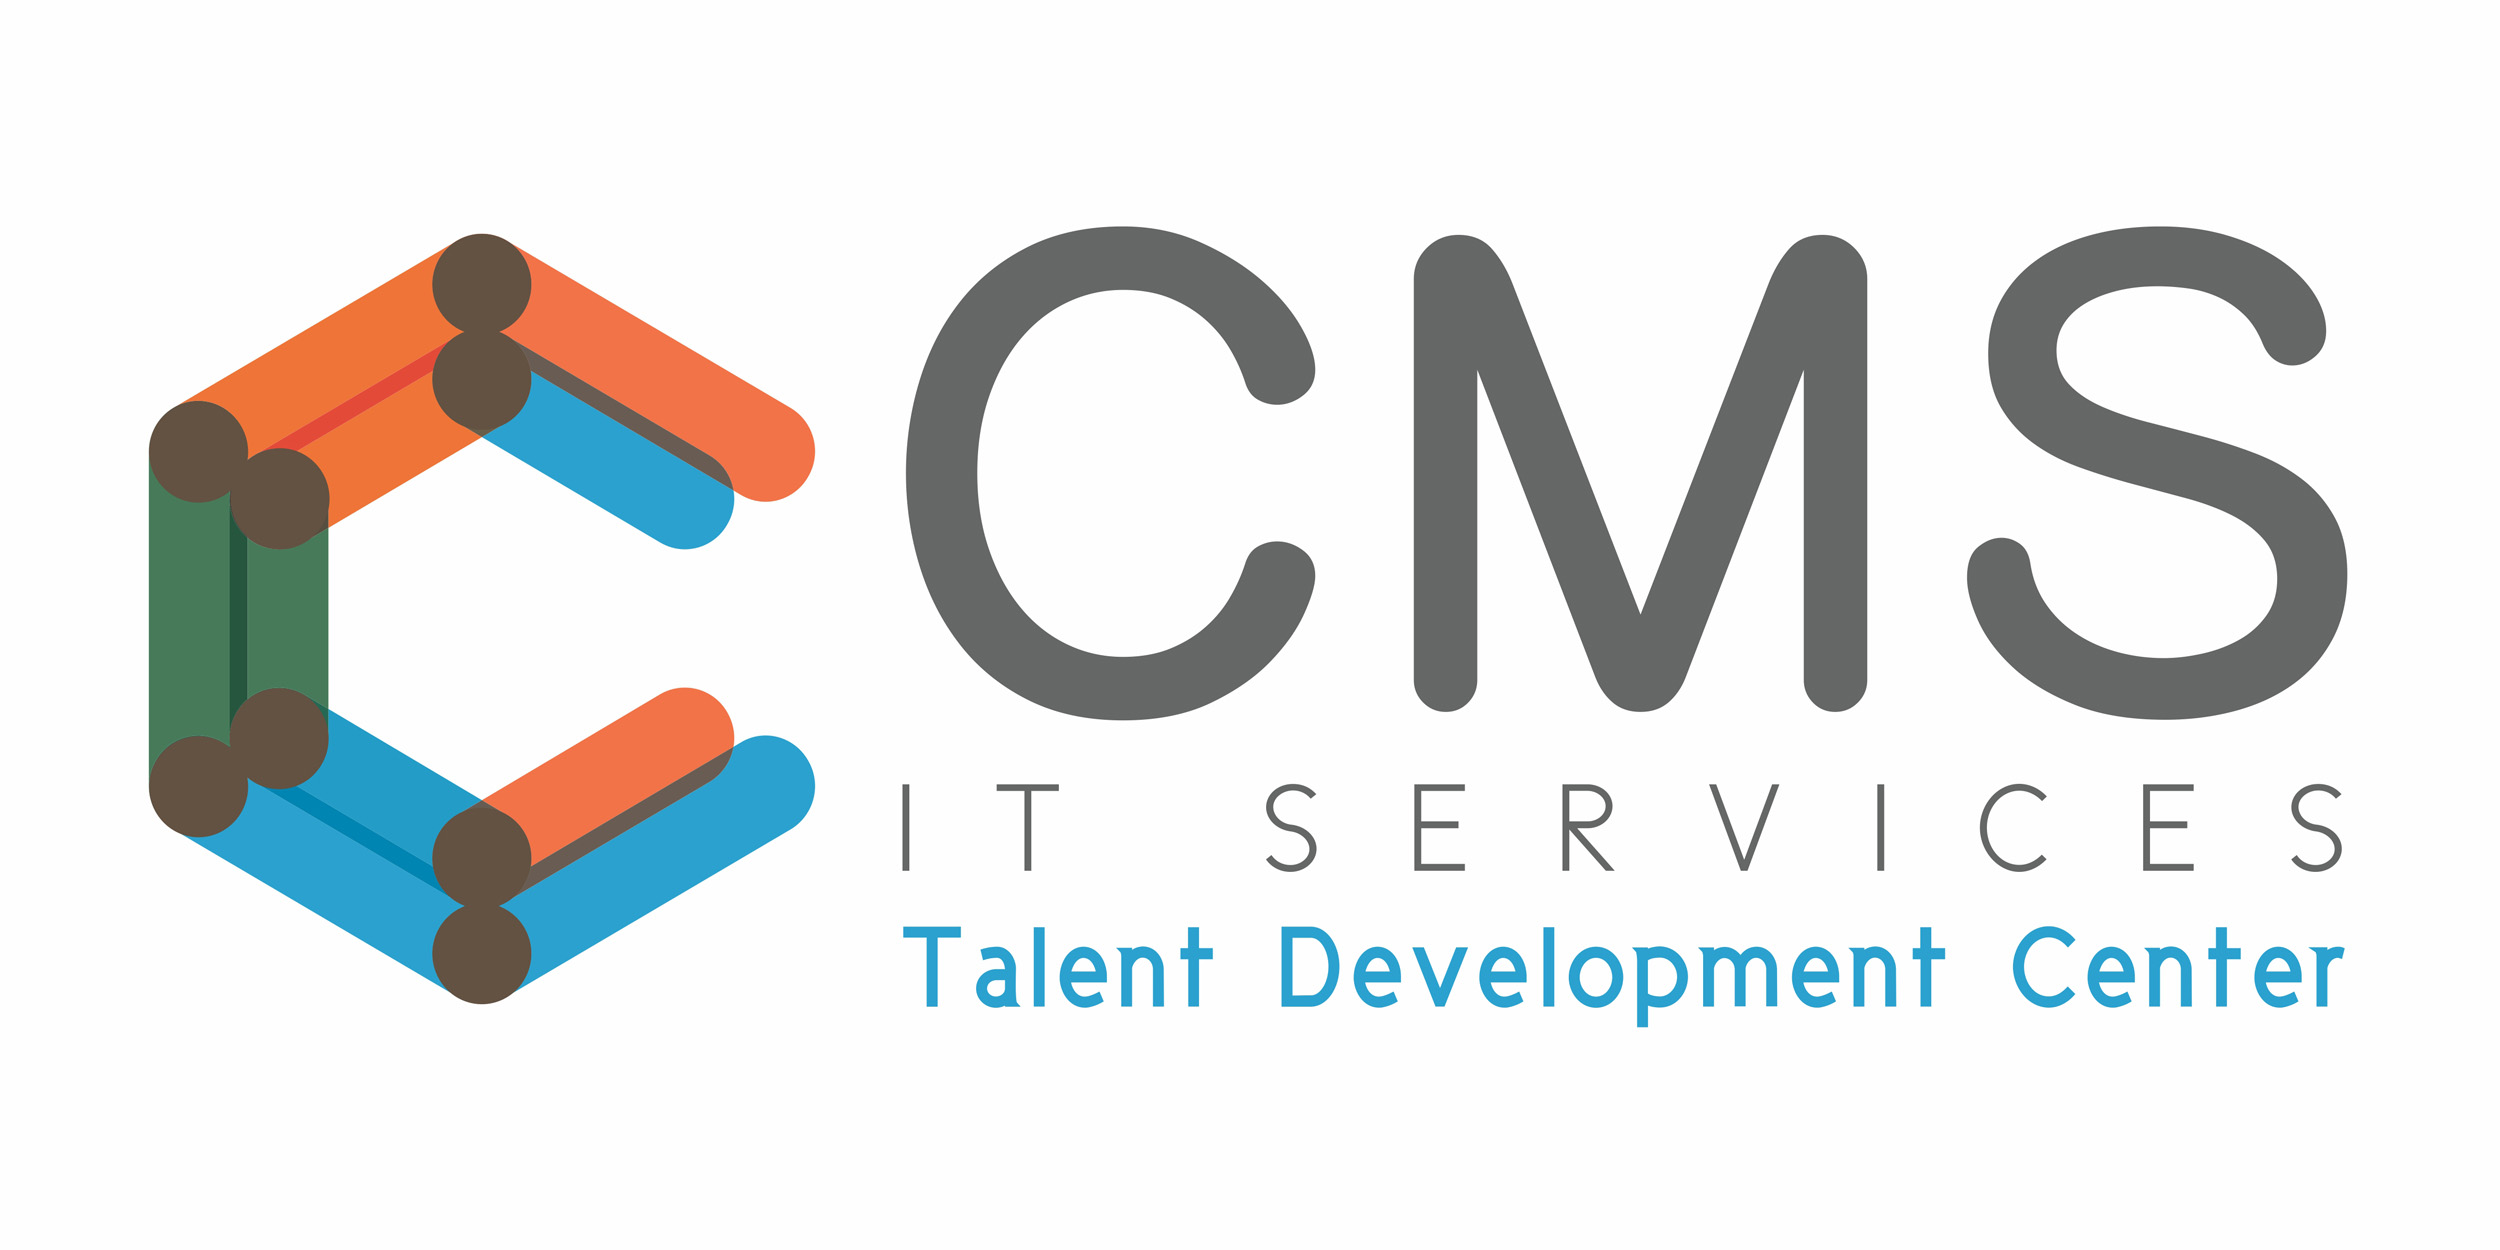 More about CMS IT Services Talent Development Center